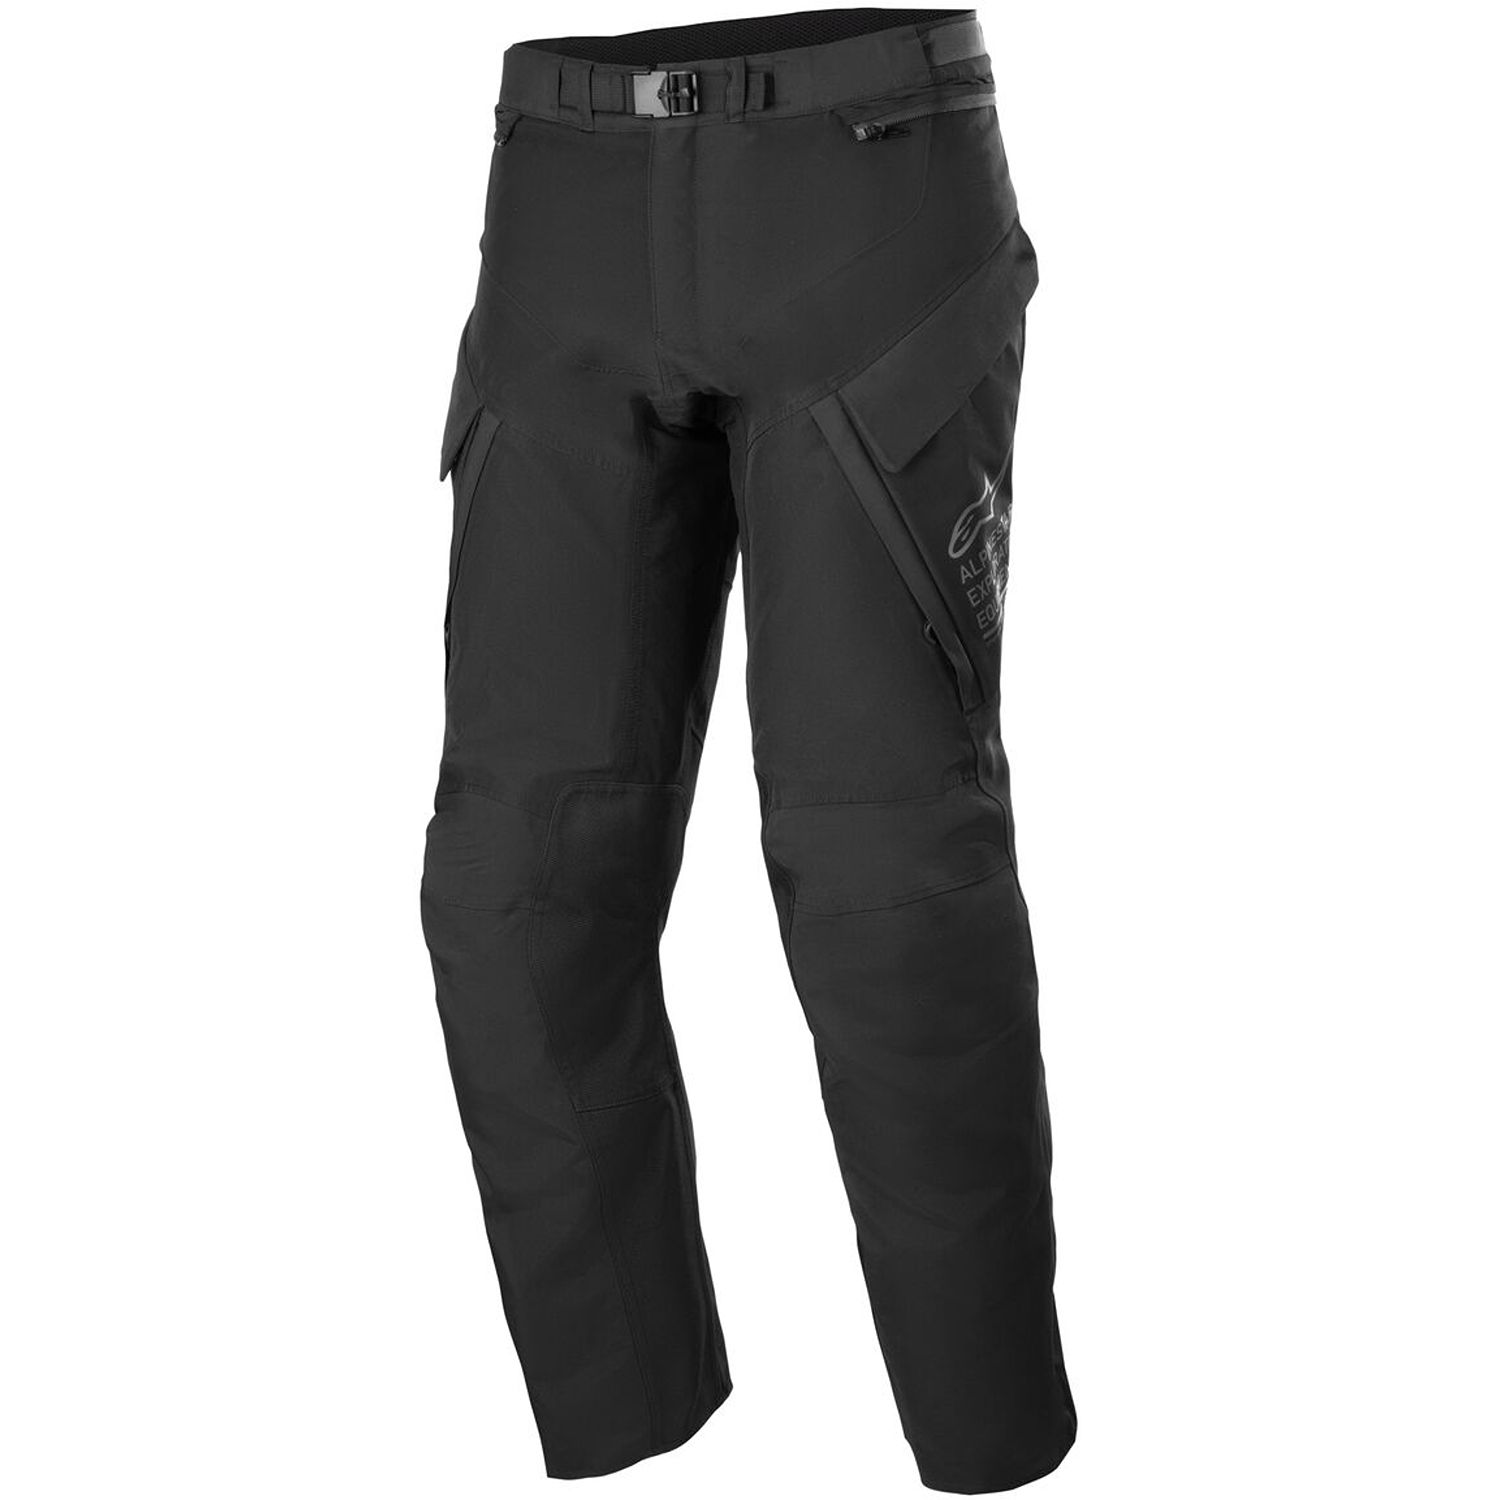 Image of Alpinestars ST-7 2L Gore-Tex Pants Black Dark Grey Size 2XL ID 8059347249704